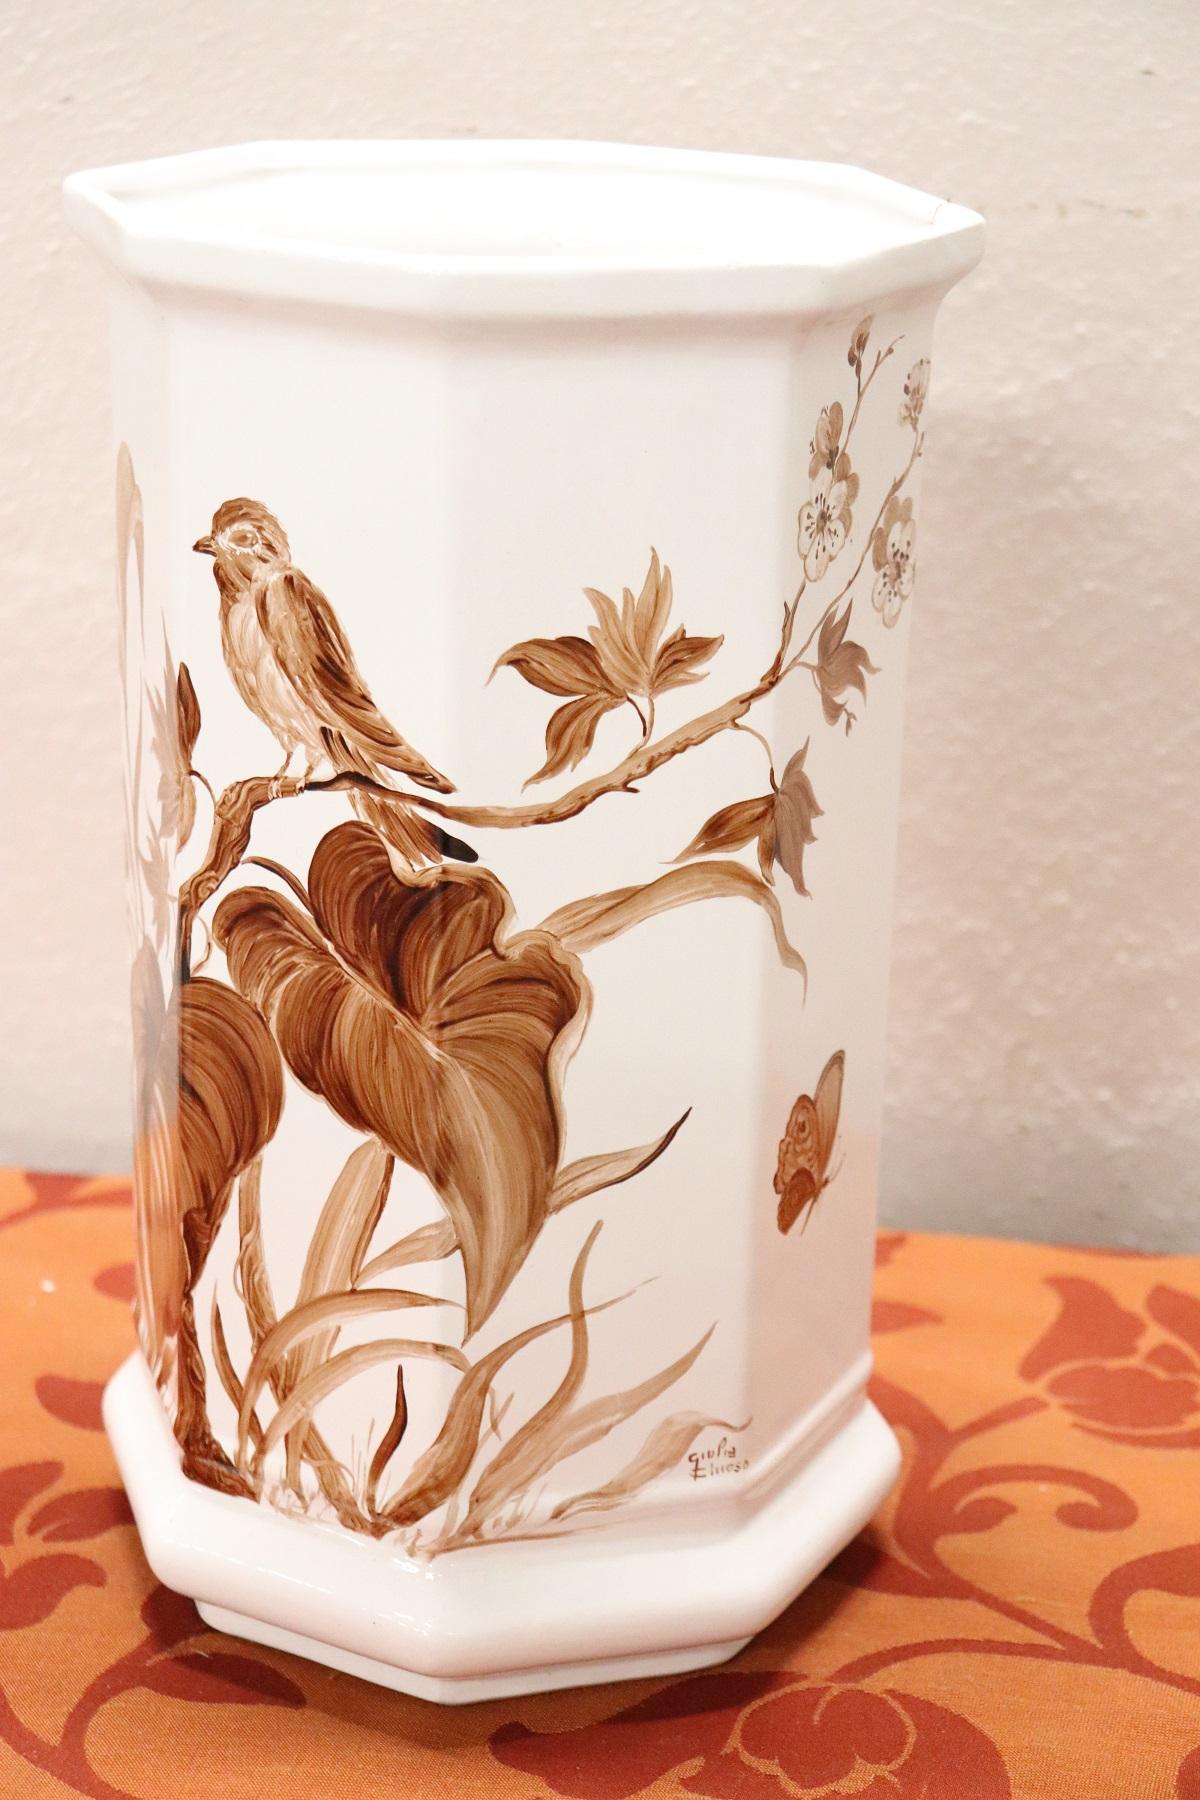 Schöne italienische Vase aus weißer Keramik mit feiner Handmalerei der Künstlerin Giulia Chioso. Unterschrieben. Perfekt zum Halten von Blumen!
   